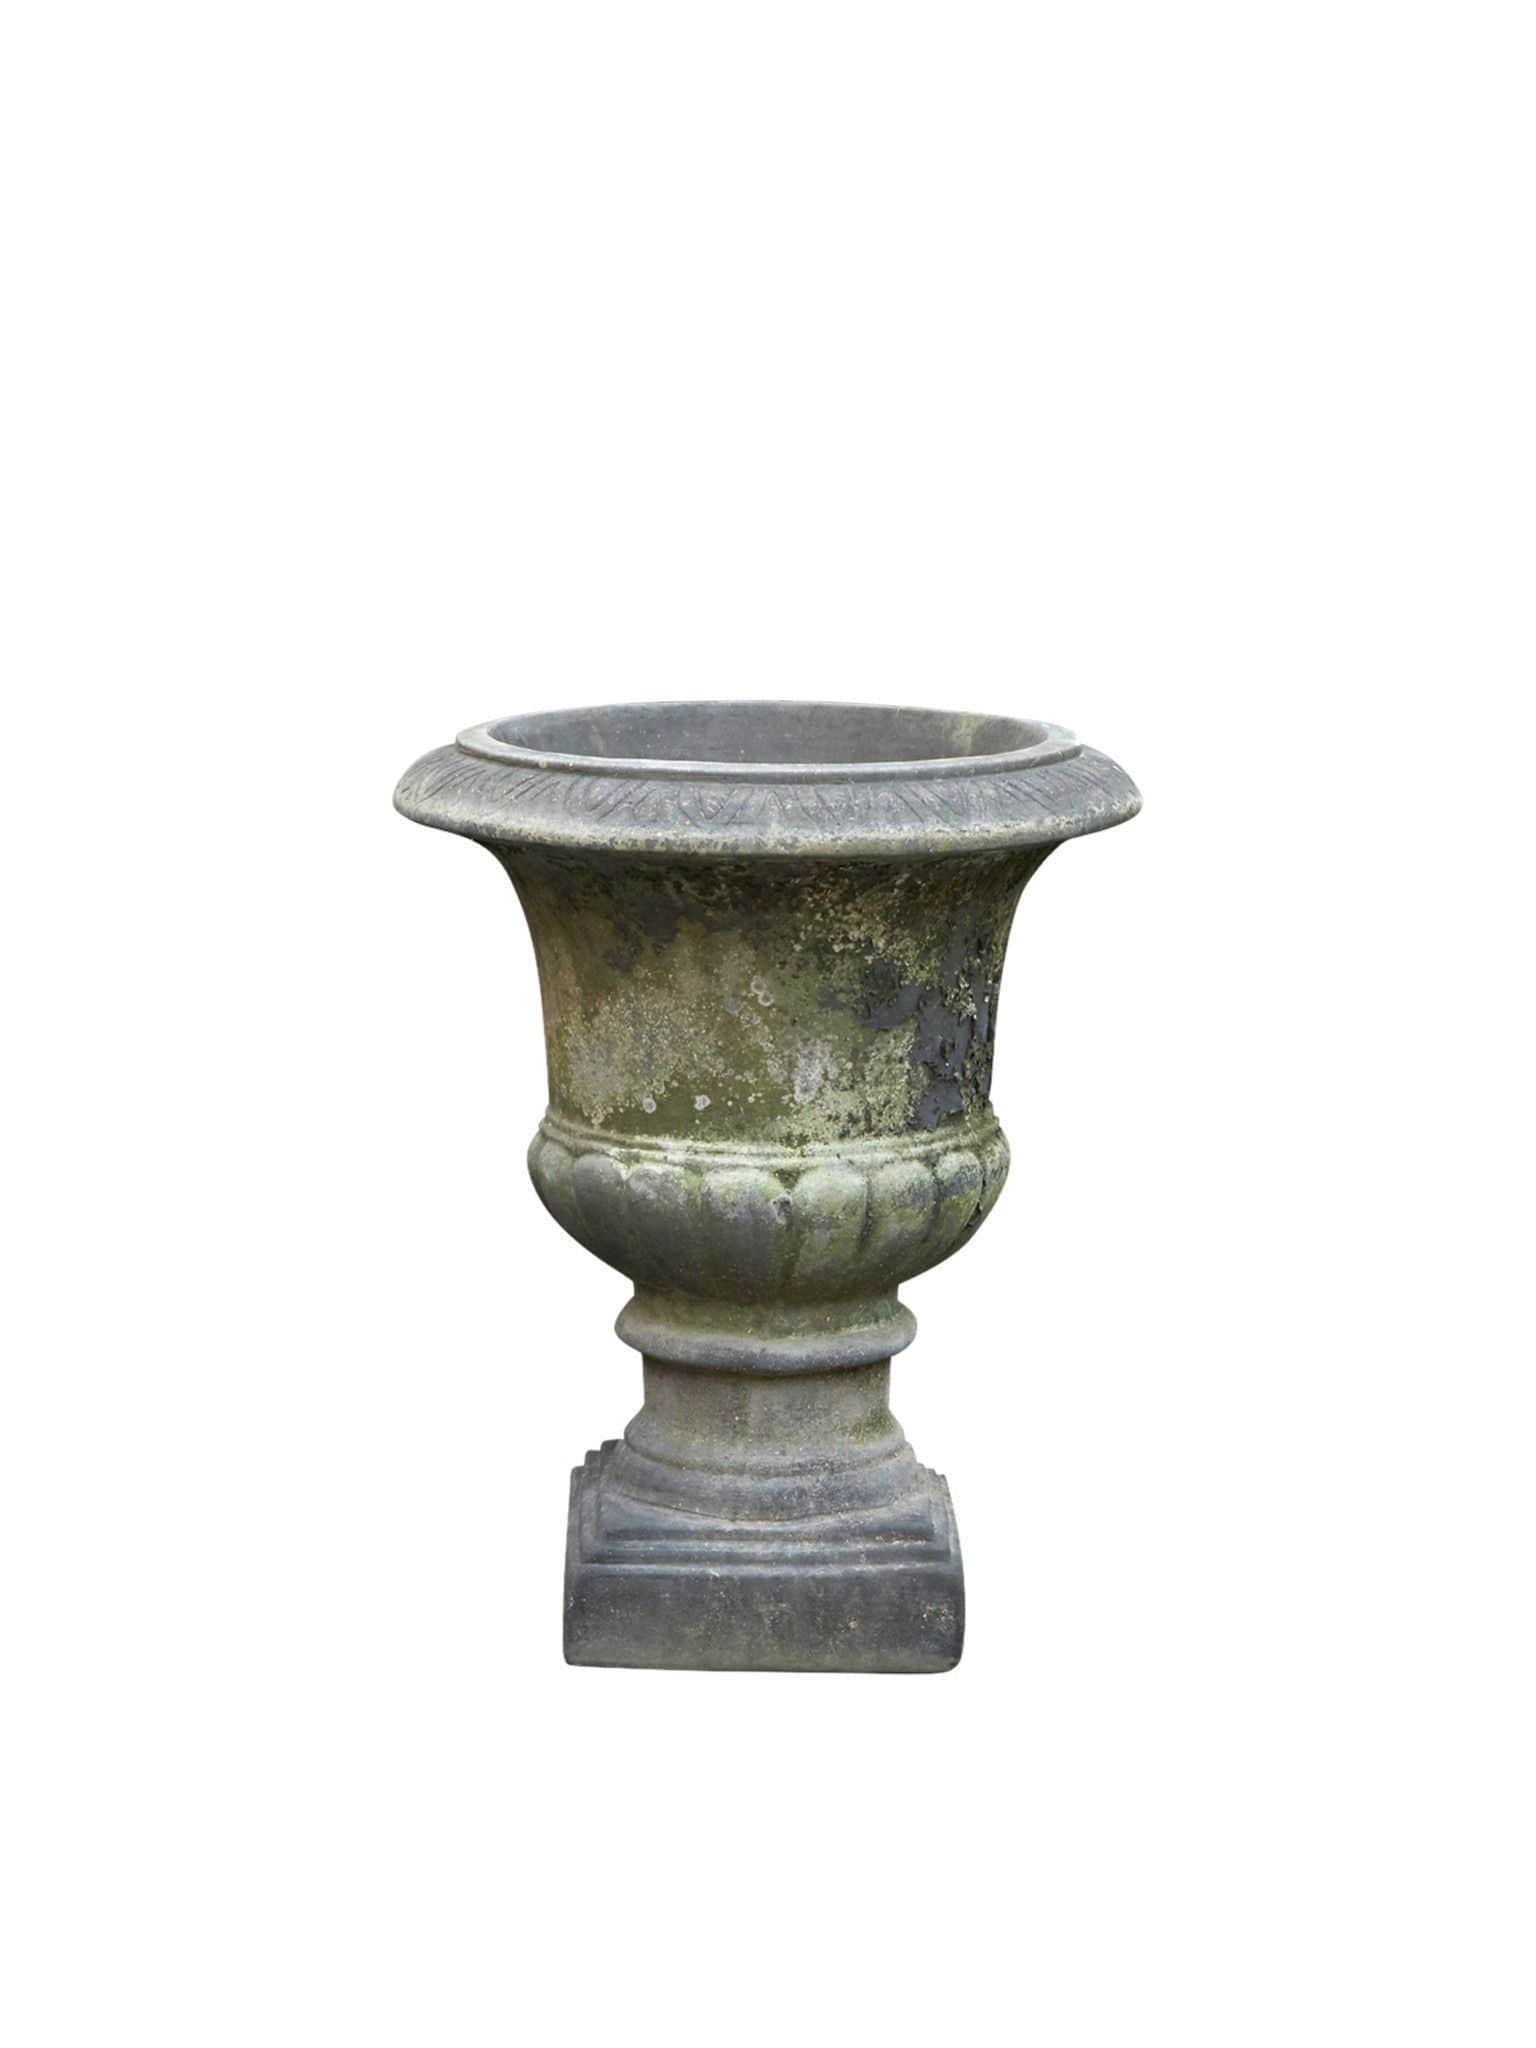 Stor krukke i keramikk med vakker patina. Denne er lekker som den er eller fyll den med dine favorittblomster, siv og gress er flott i denne. Mål: D35xH40cm.